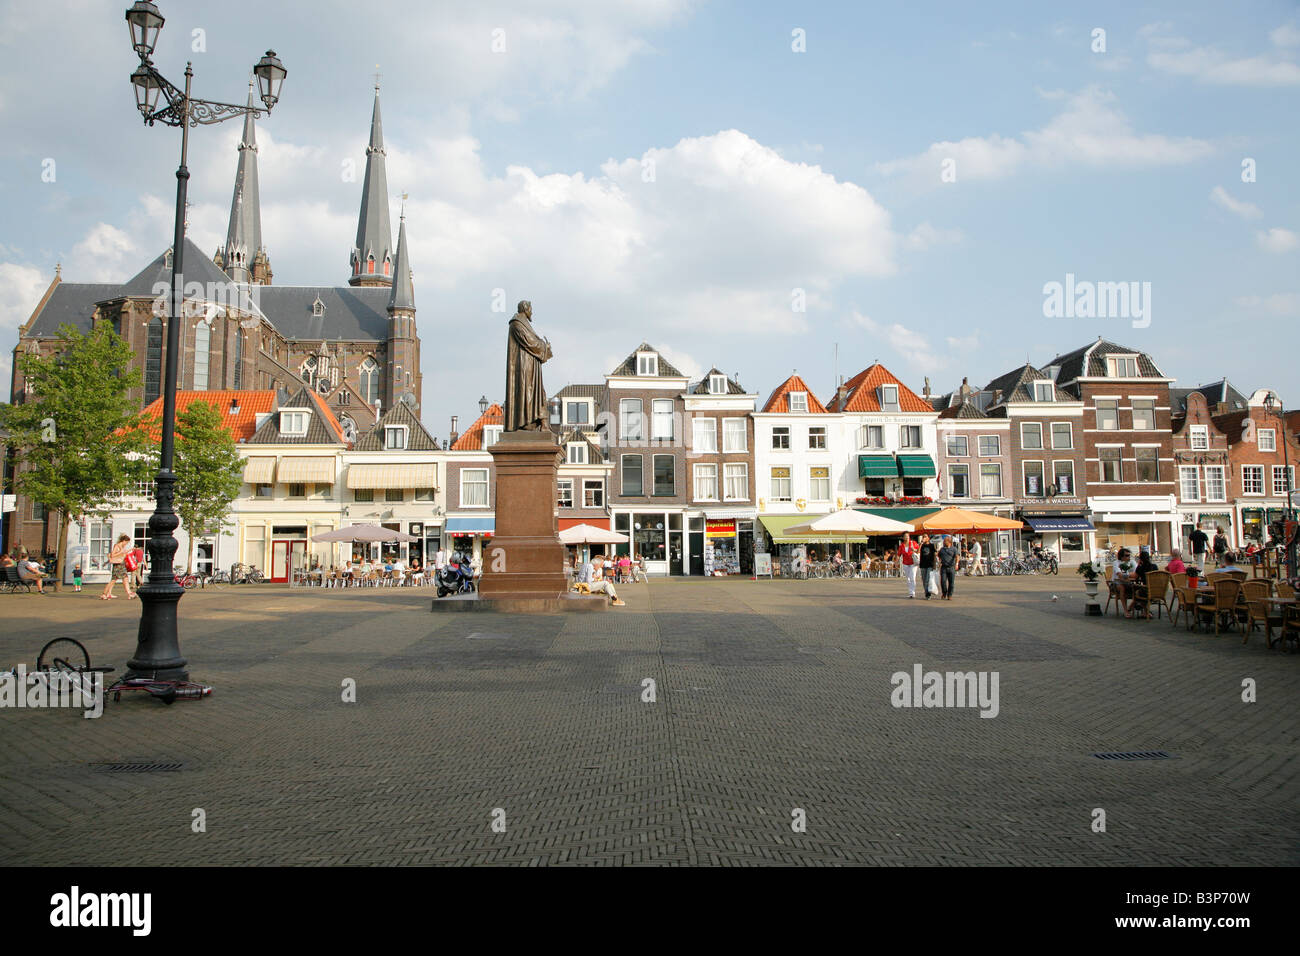 Staue von Hugo Grotius in Delft Stockfoto